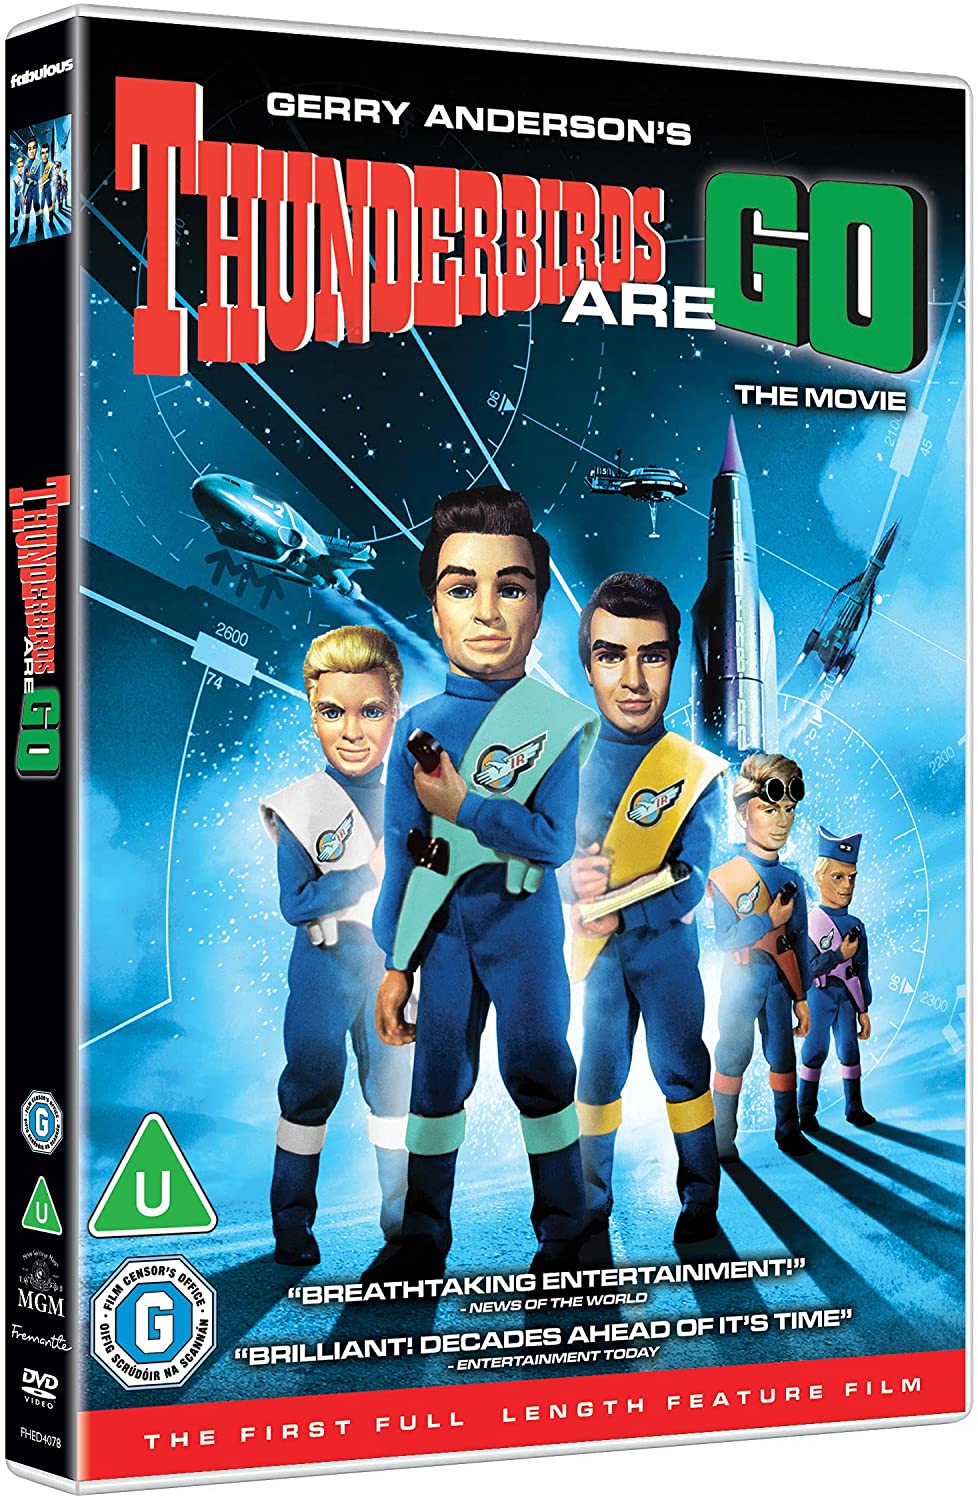 Thunderbirds and Go [2021] [DVD]